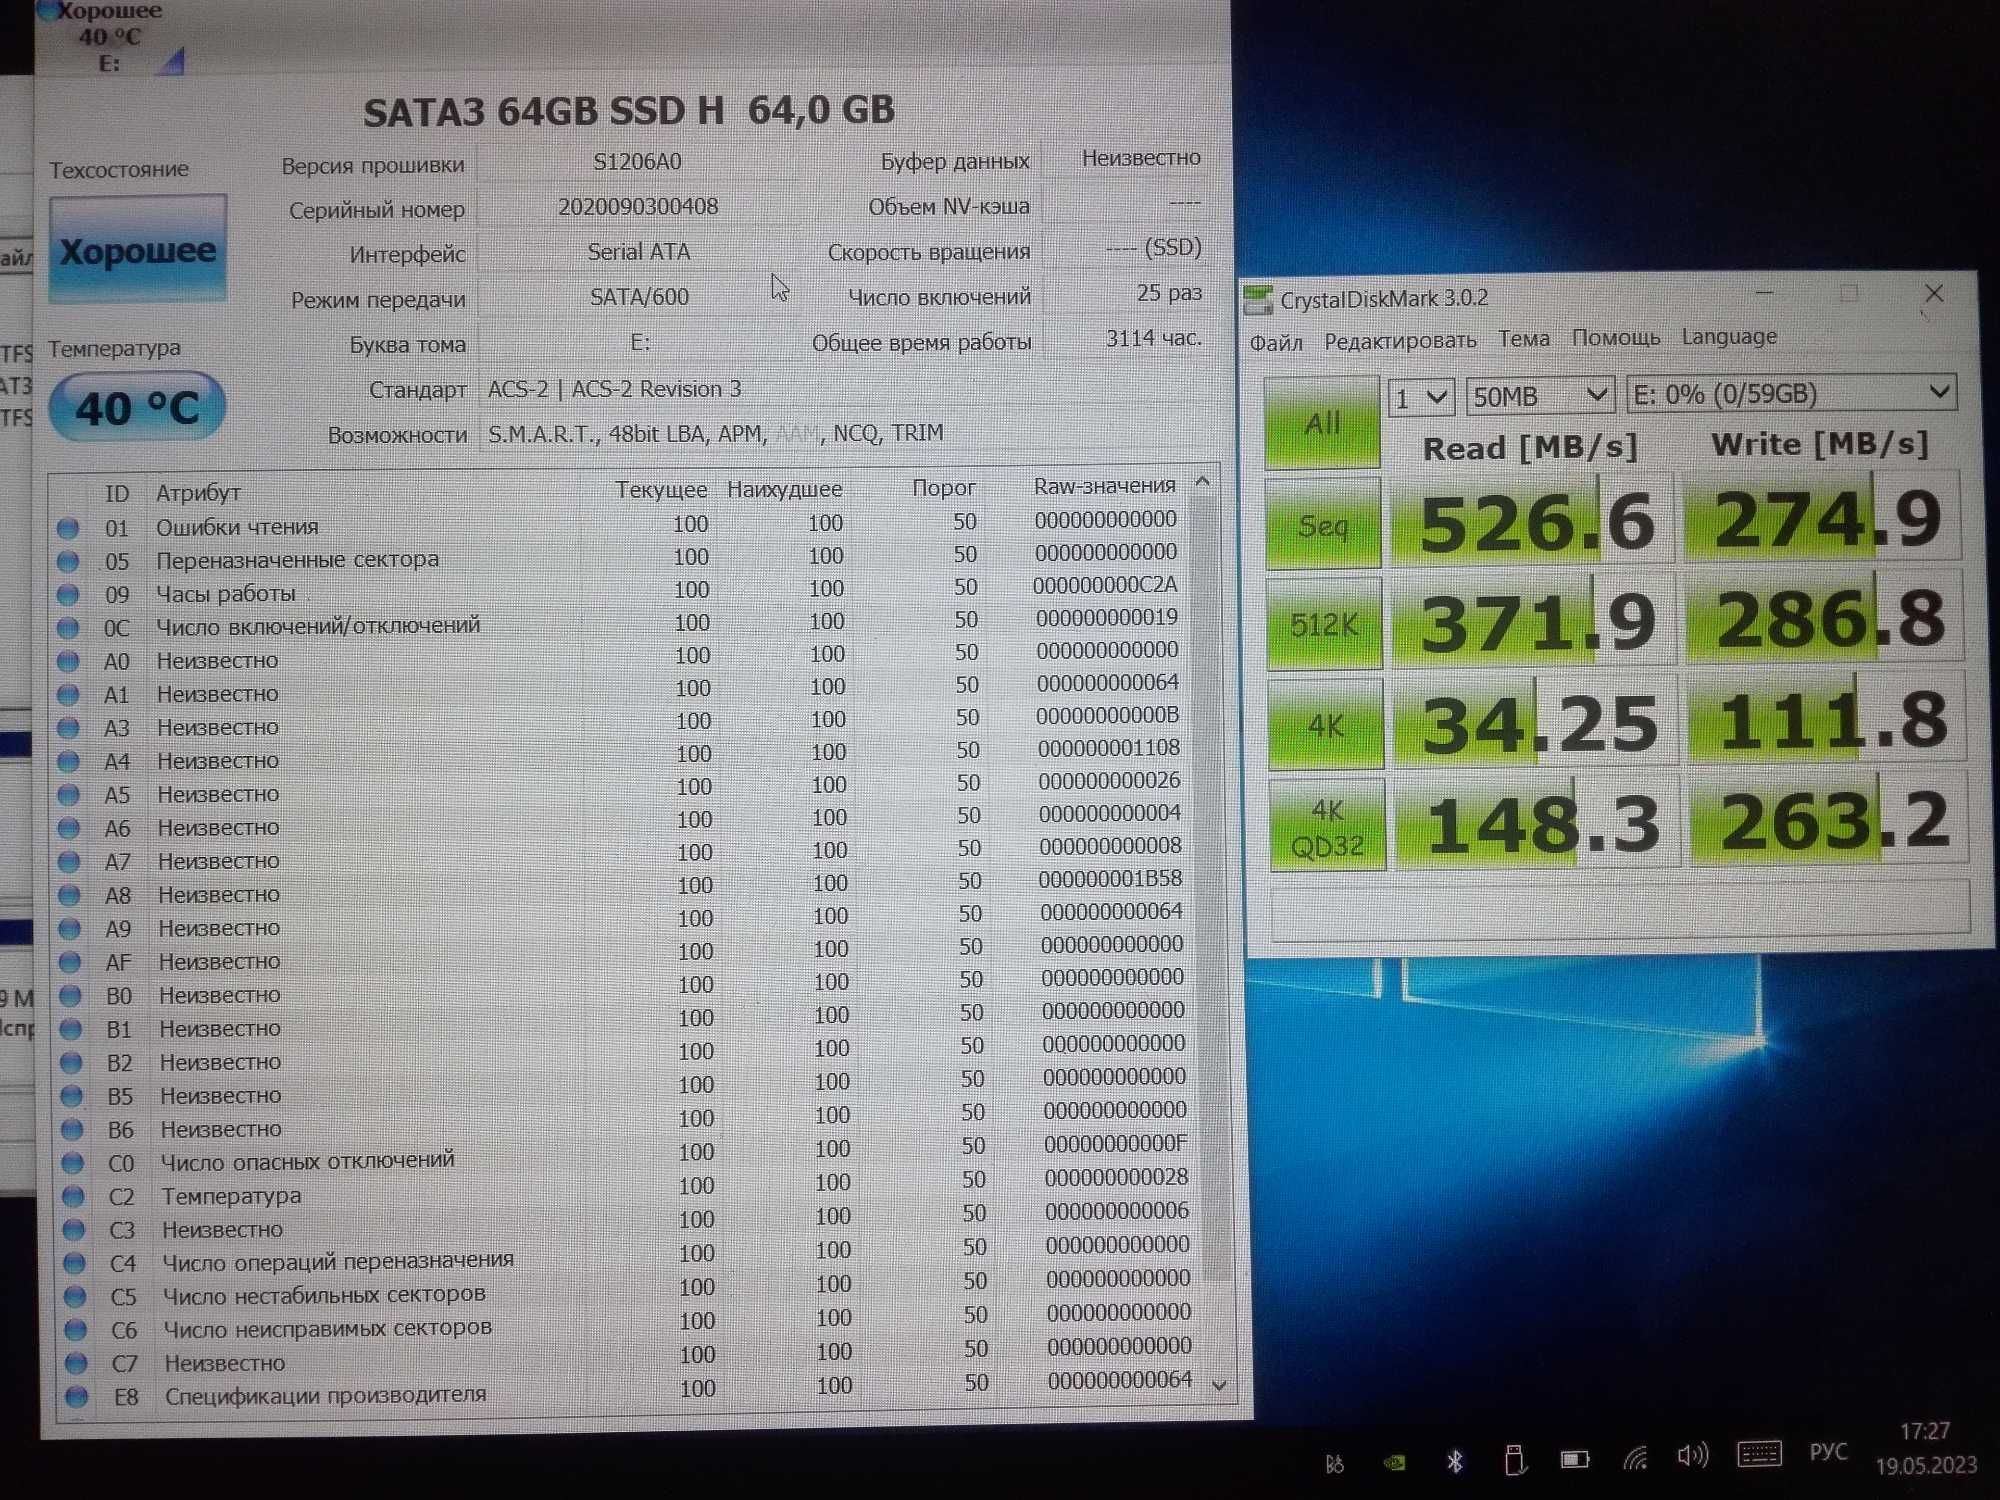 SATA SSD 64GB half size slim KingDian H100